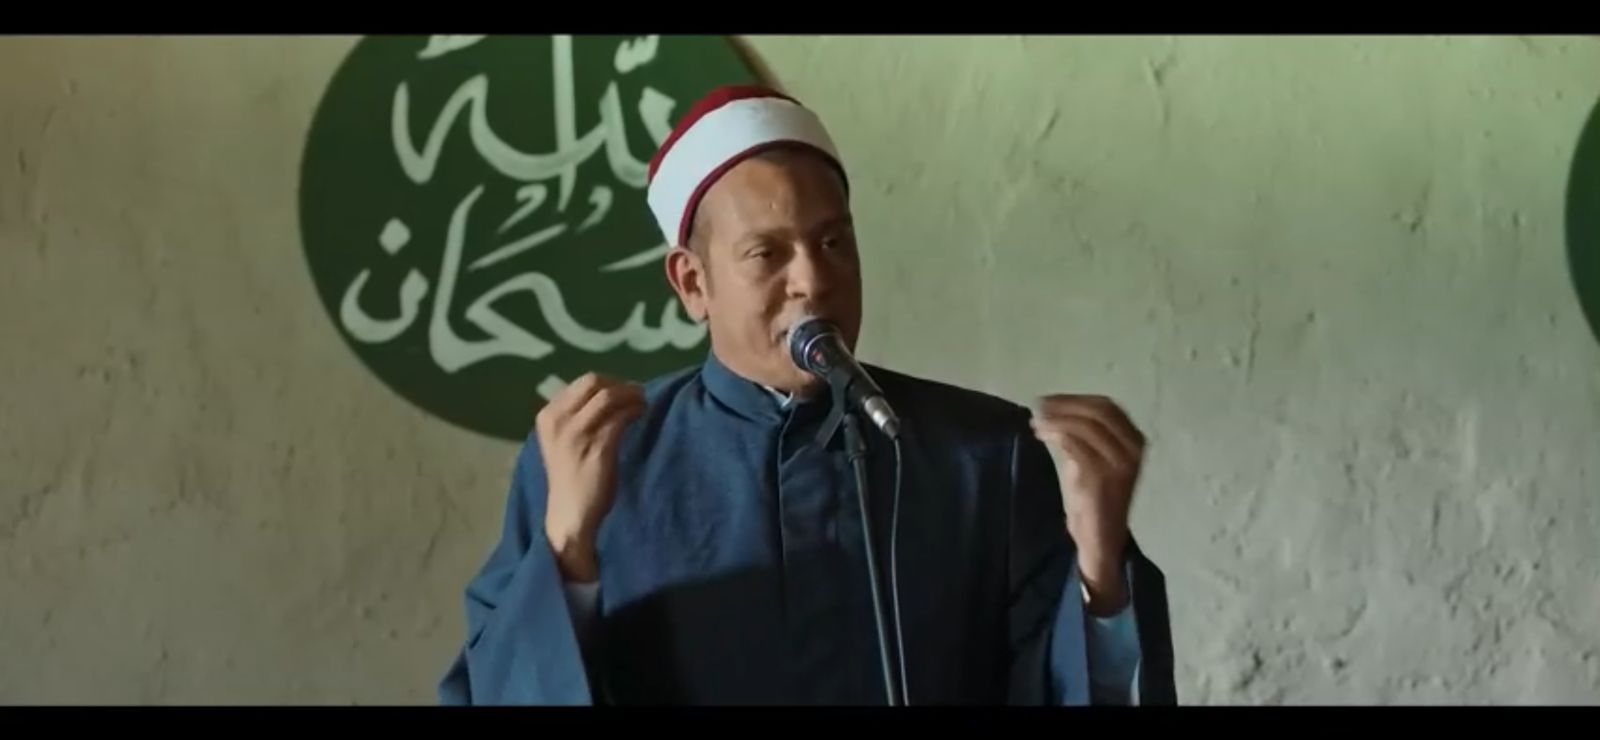 مسلسل حضرة العمدة الحلقة 22  أهل تل شبورة تثور علي الشيخ دوارة وتطرده من خطبة الجمعة (1)